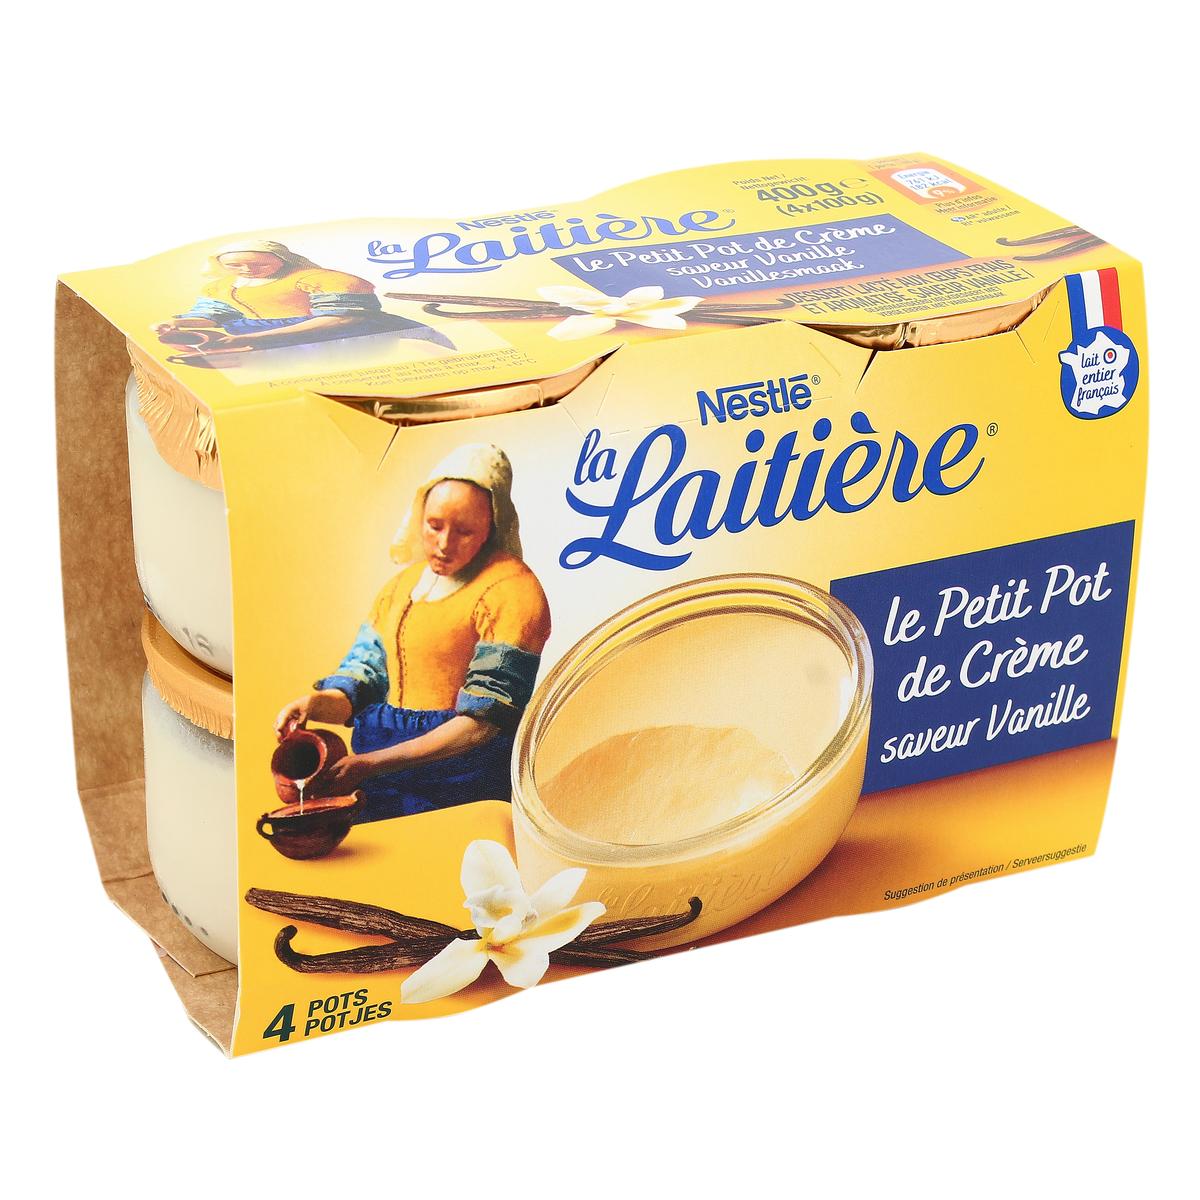 Petit pot de crème vanille, La laitière (8 x 100 g)